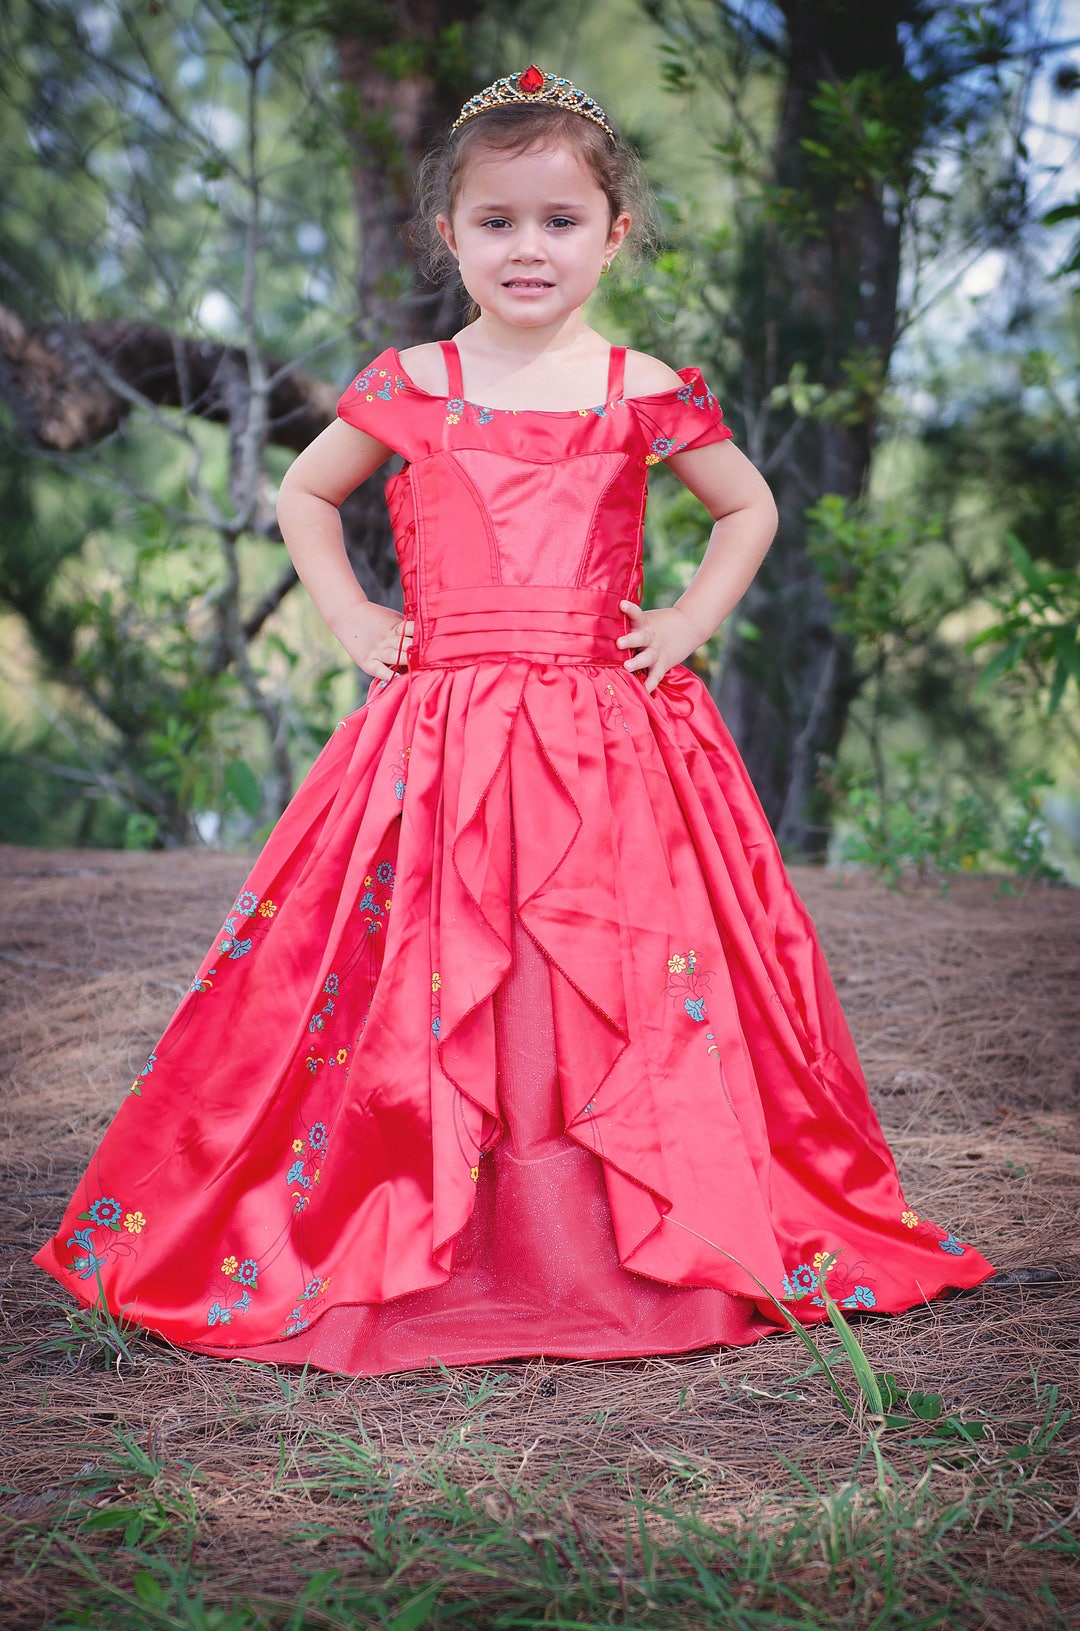 belle in red - Disney Princess Photo (8169388) - Fanpop